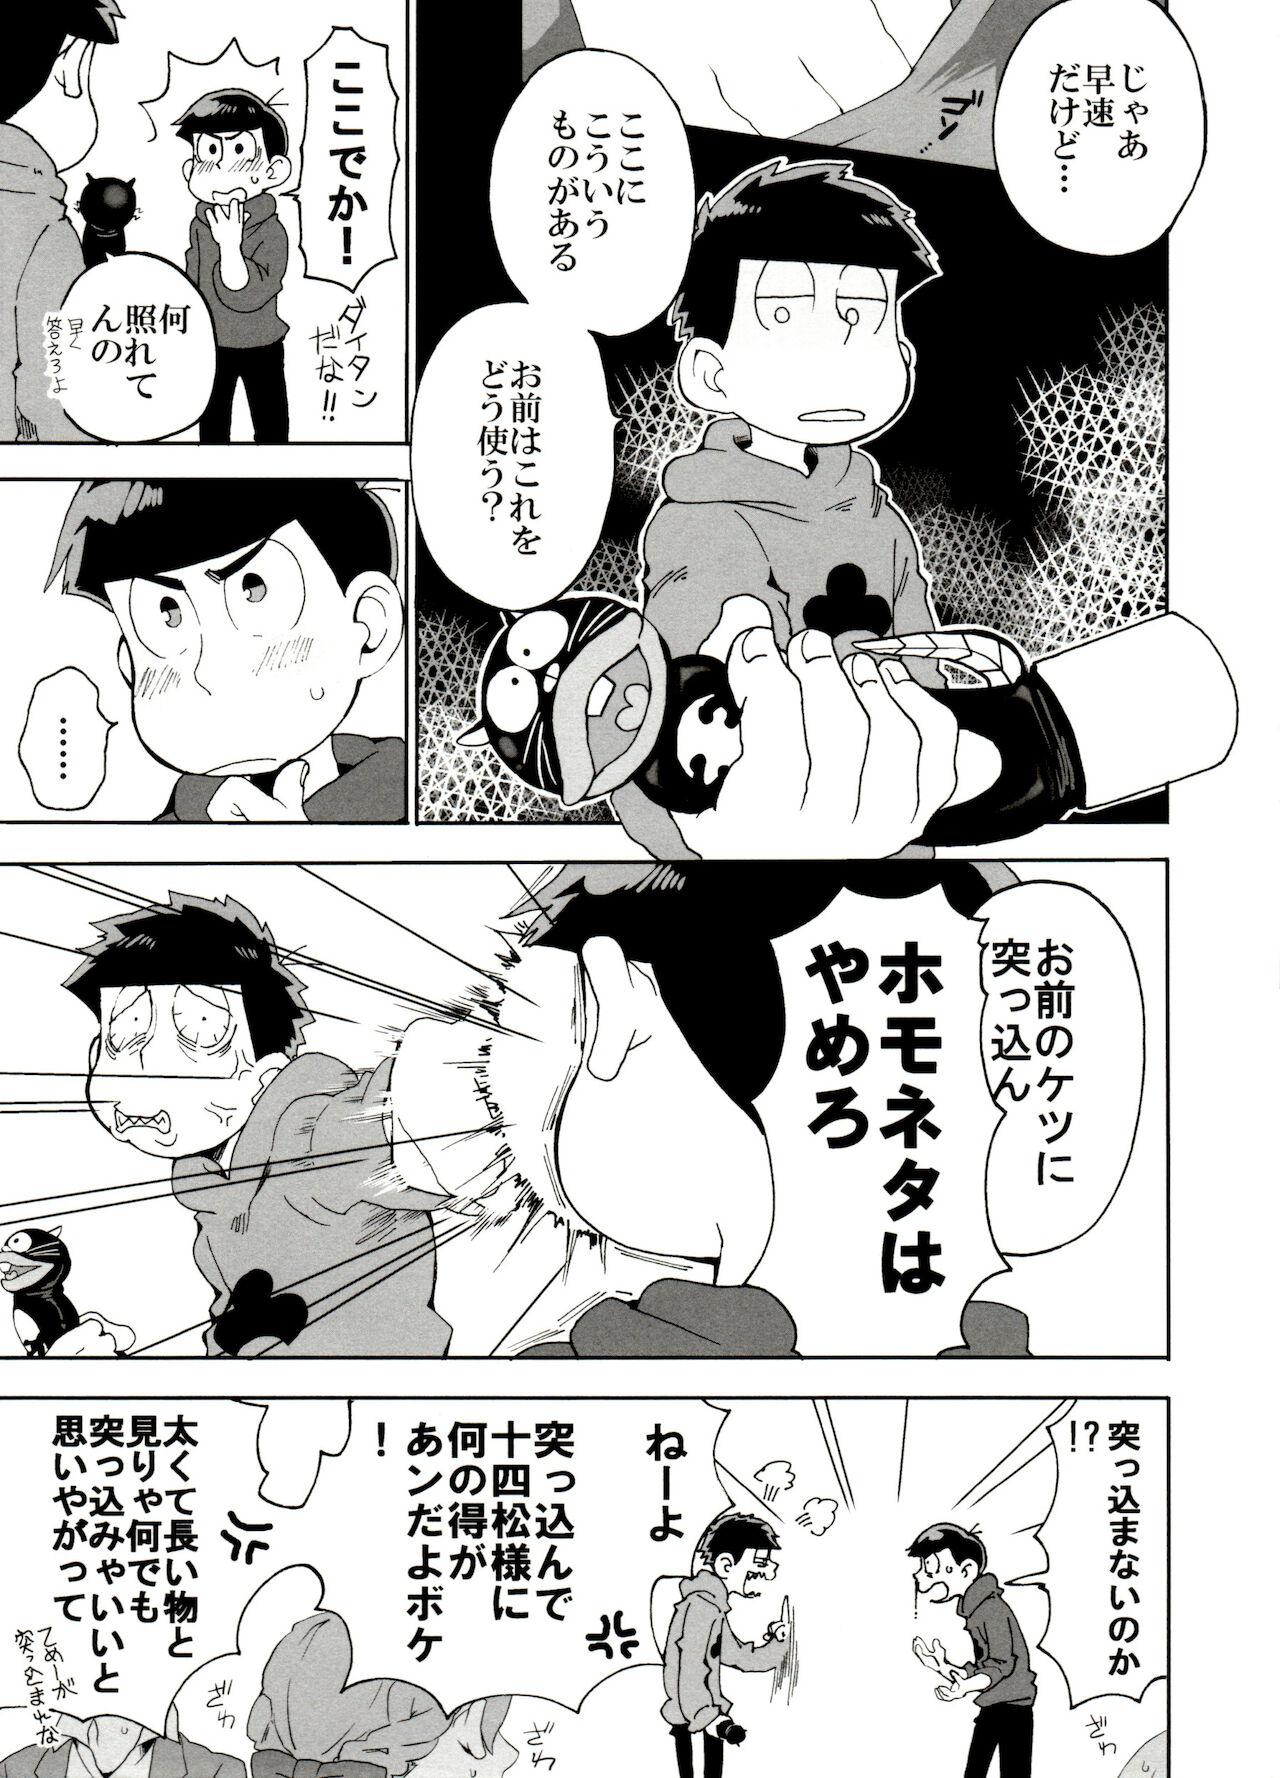 Hung SM Matsu 2 - Osomatsu san Banging - Page 7